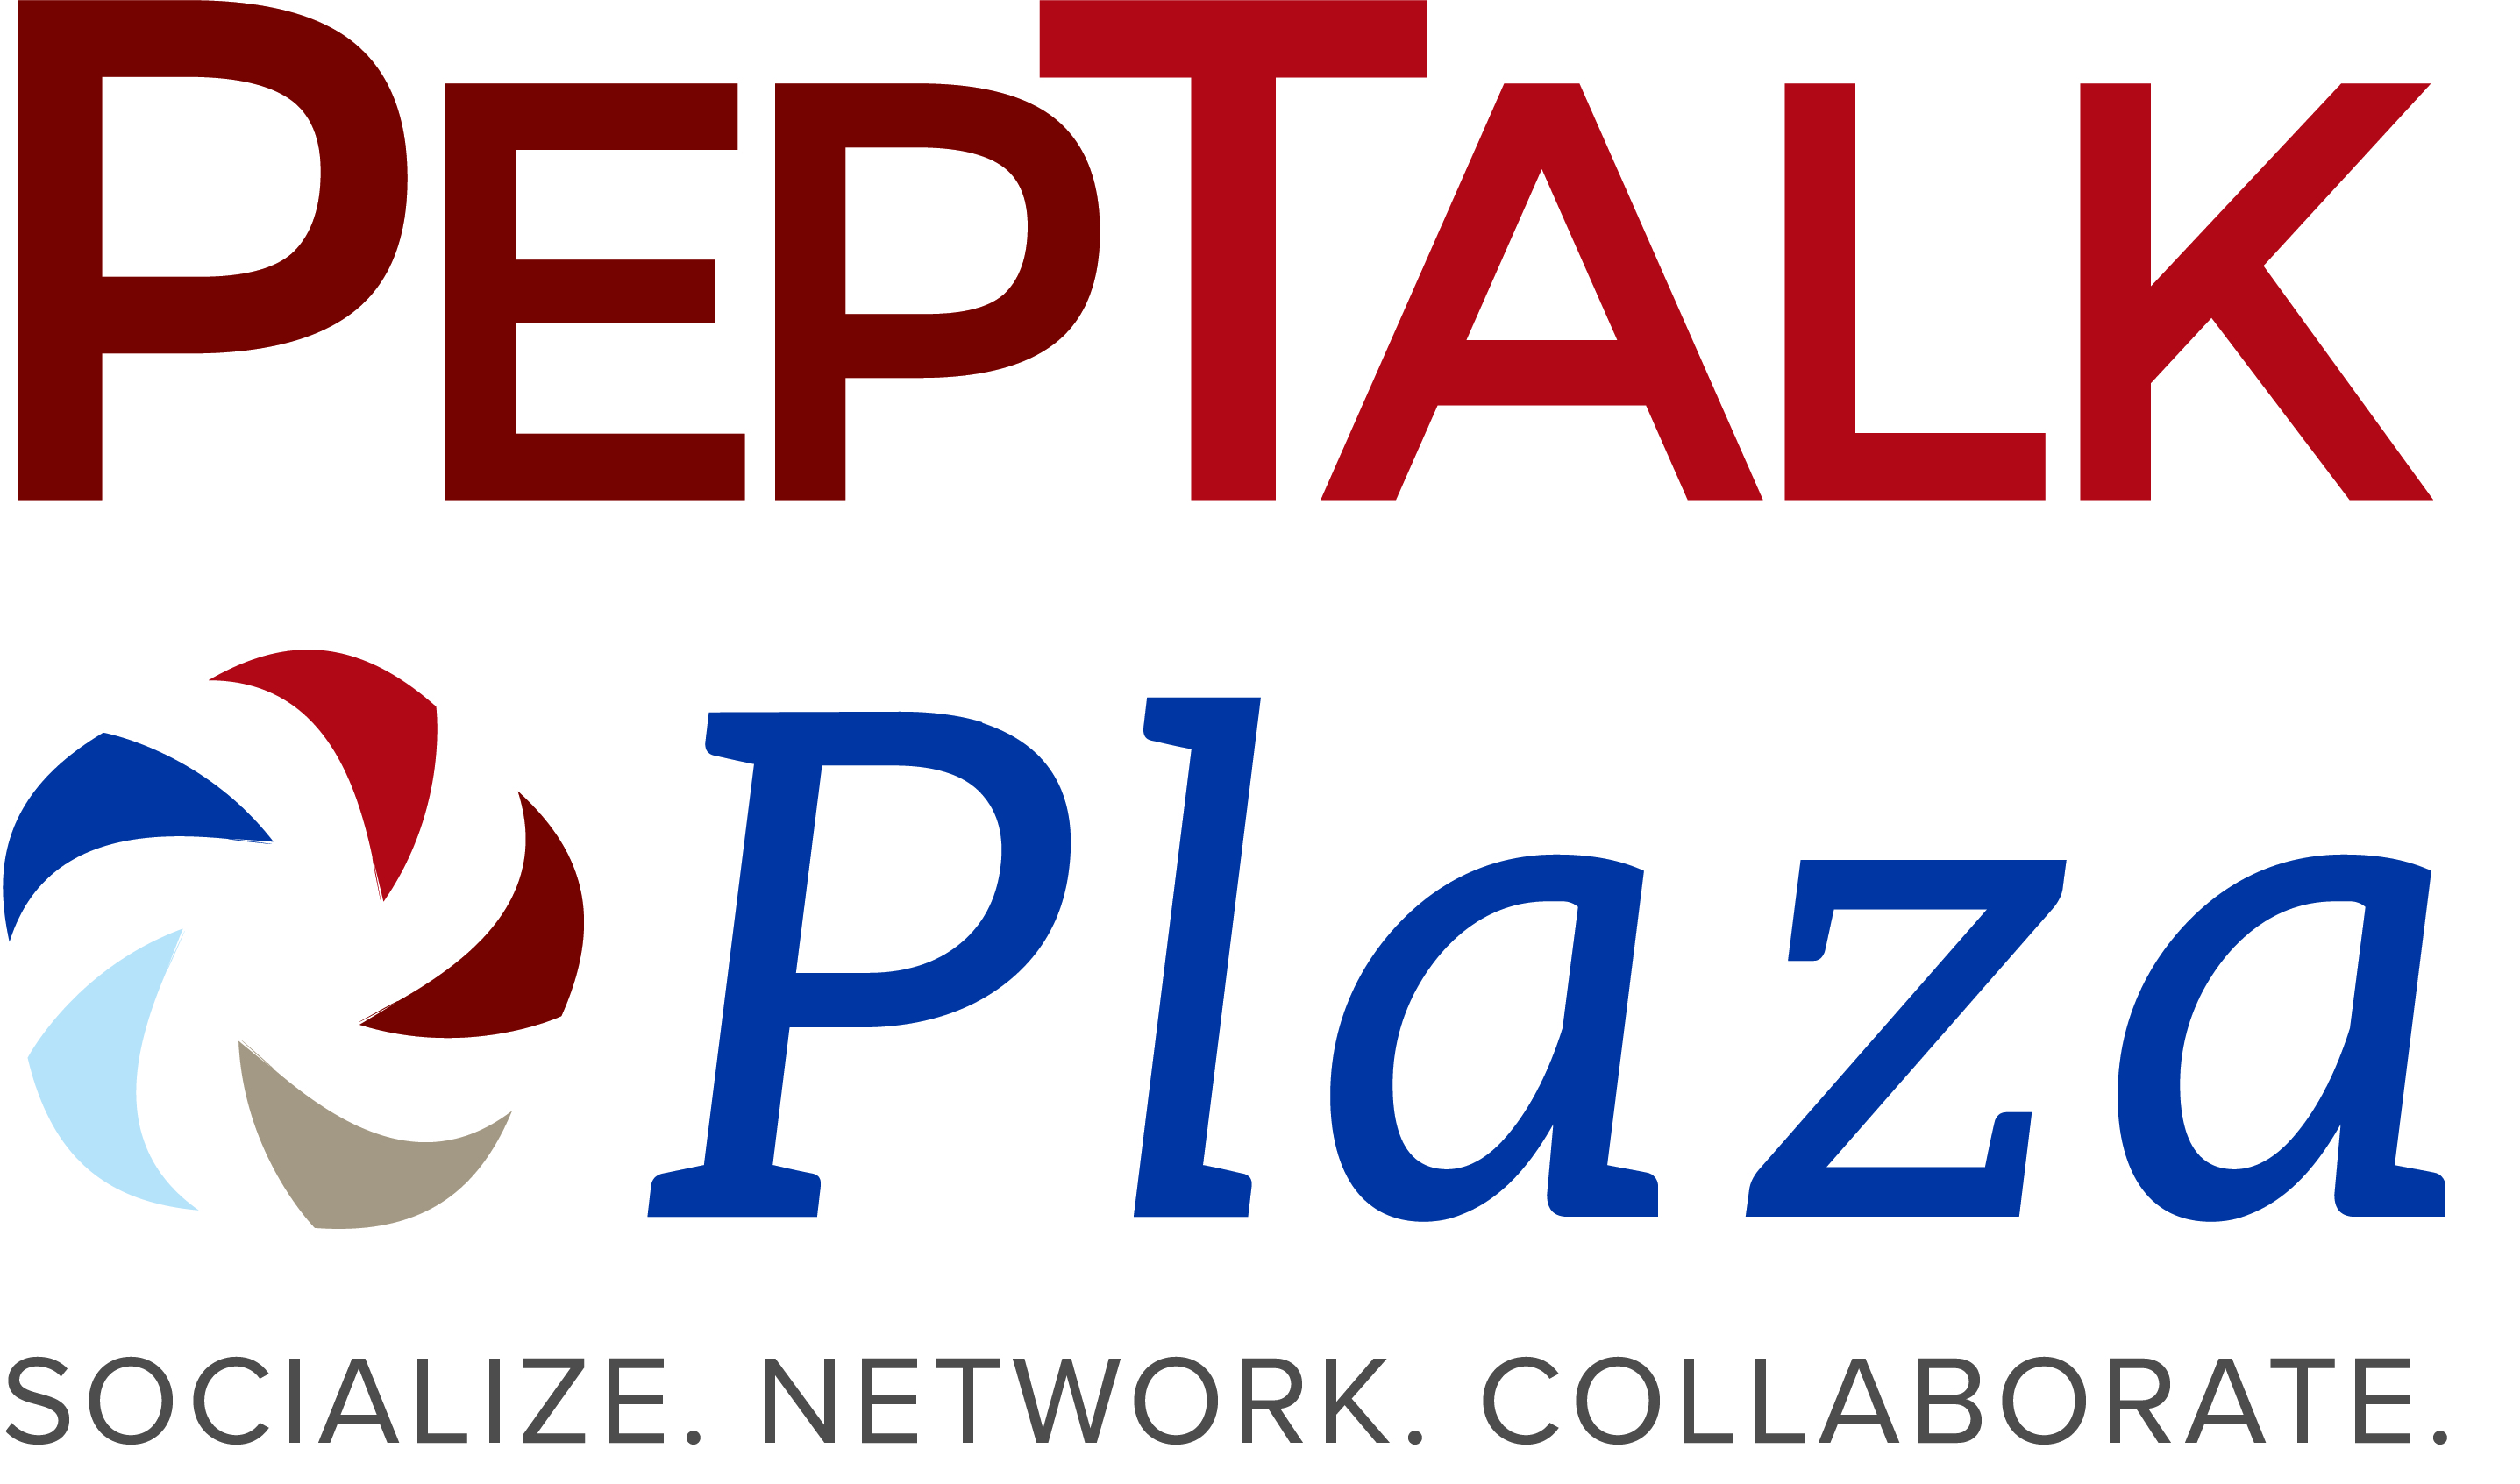 PepTalk-Plaza